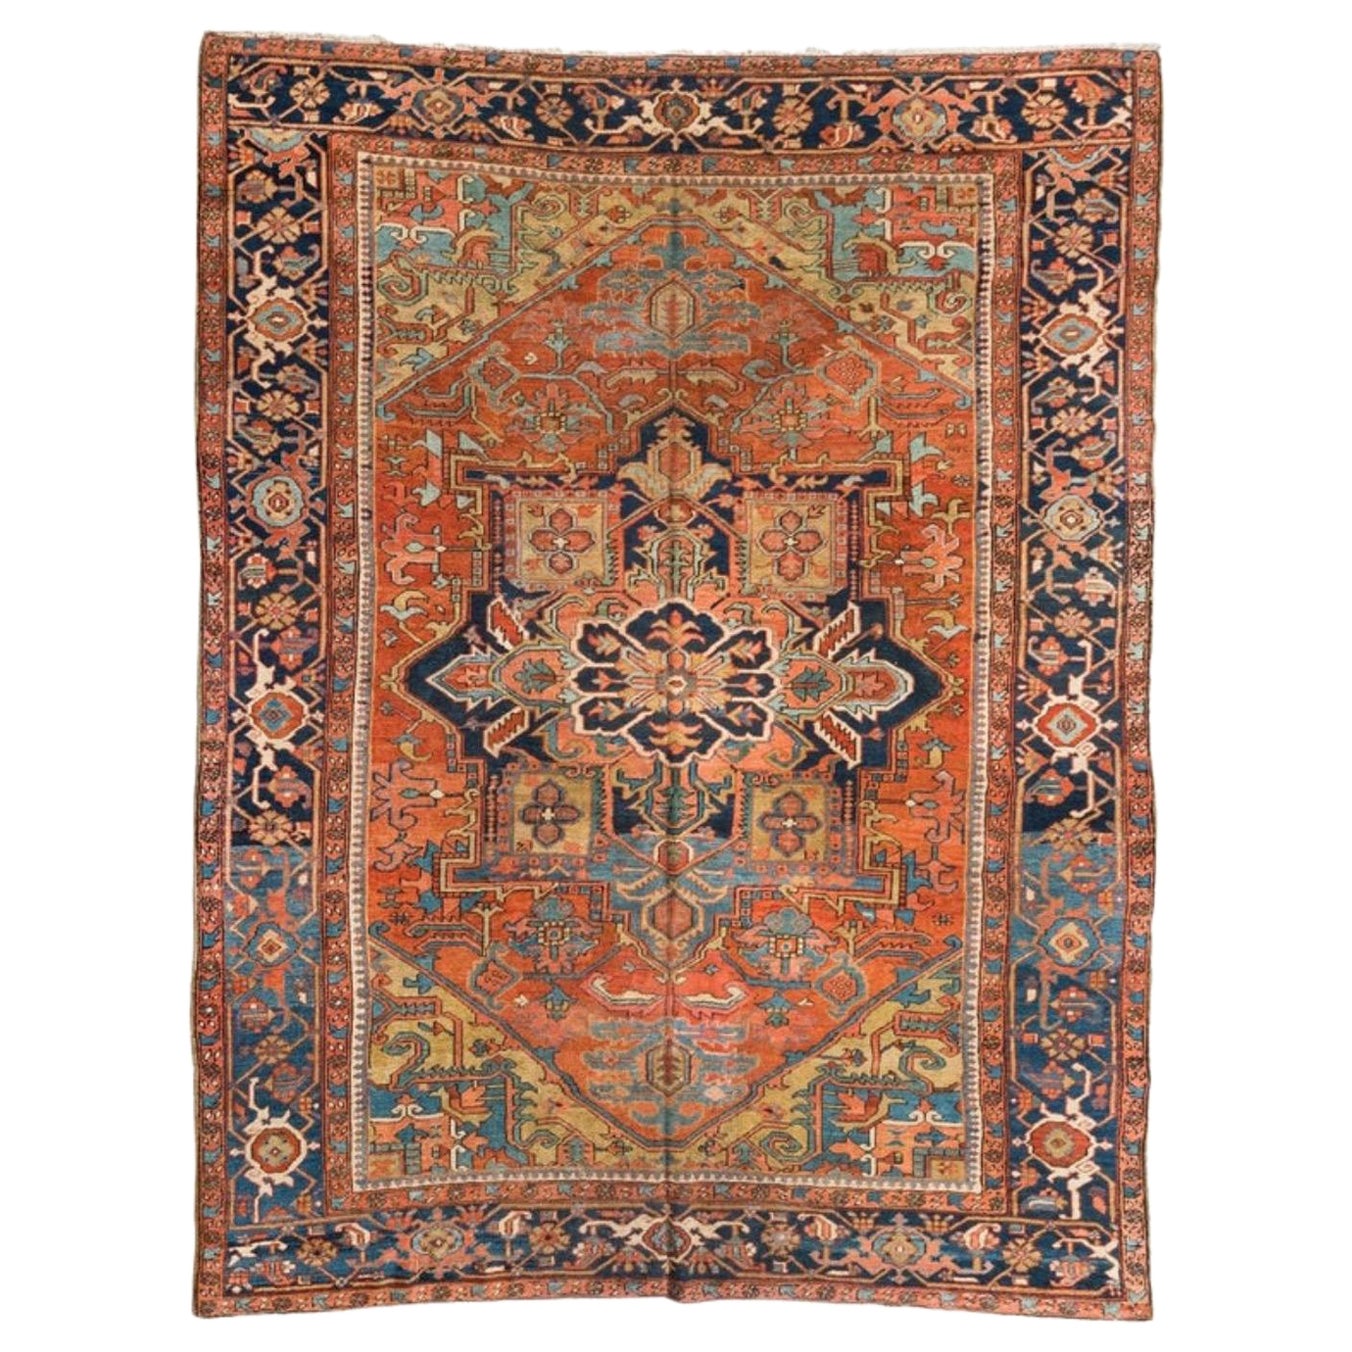 Antique tapis persan Heriz bleu rouille clair, tribal et géométrique, c. 1920